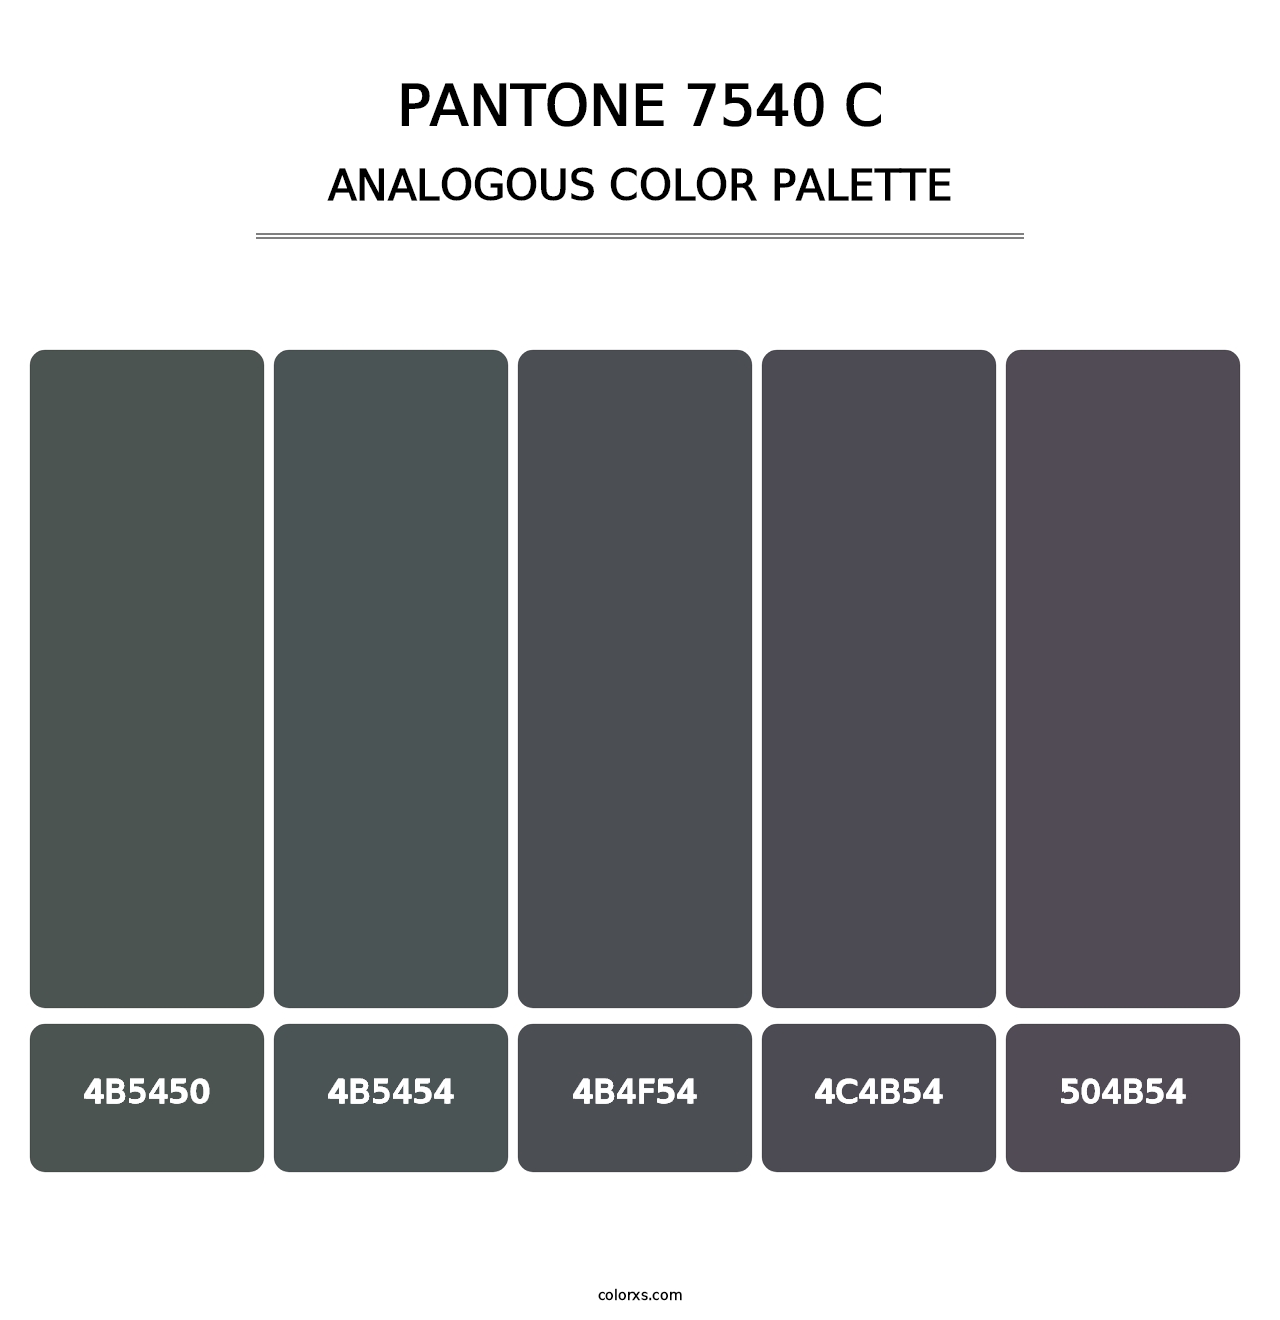 PANTONE 7540 C - Analogous Color Palette